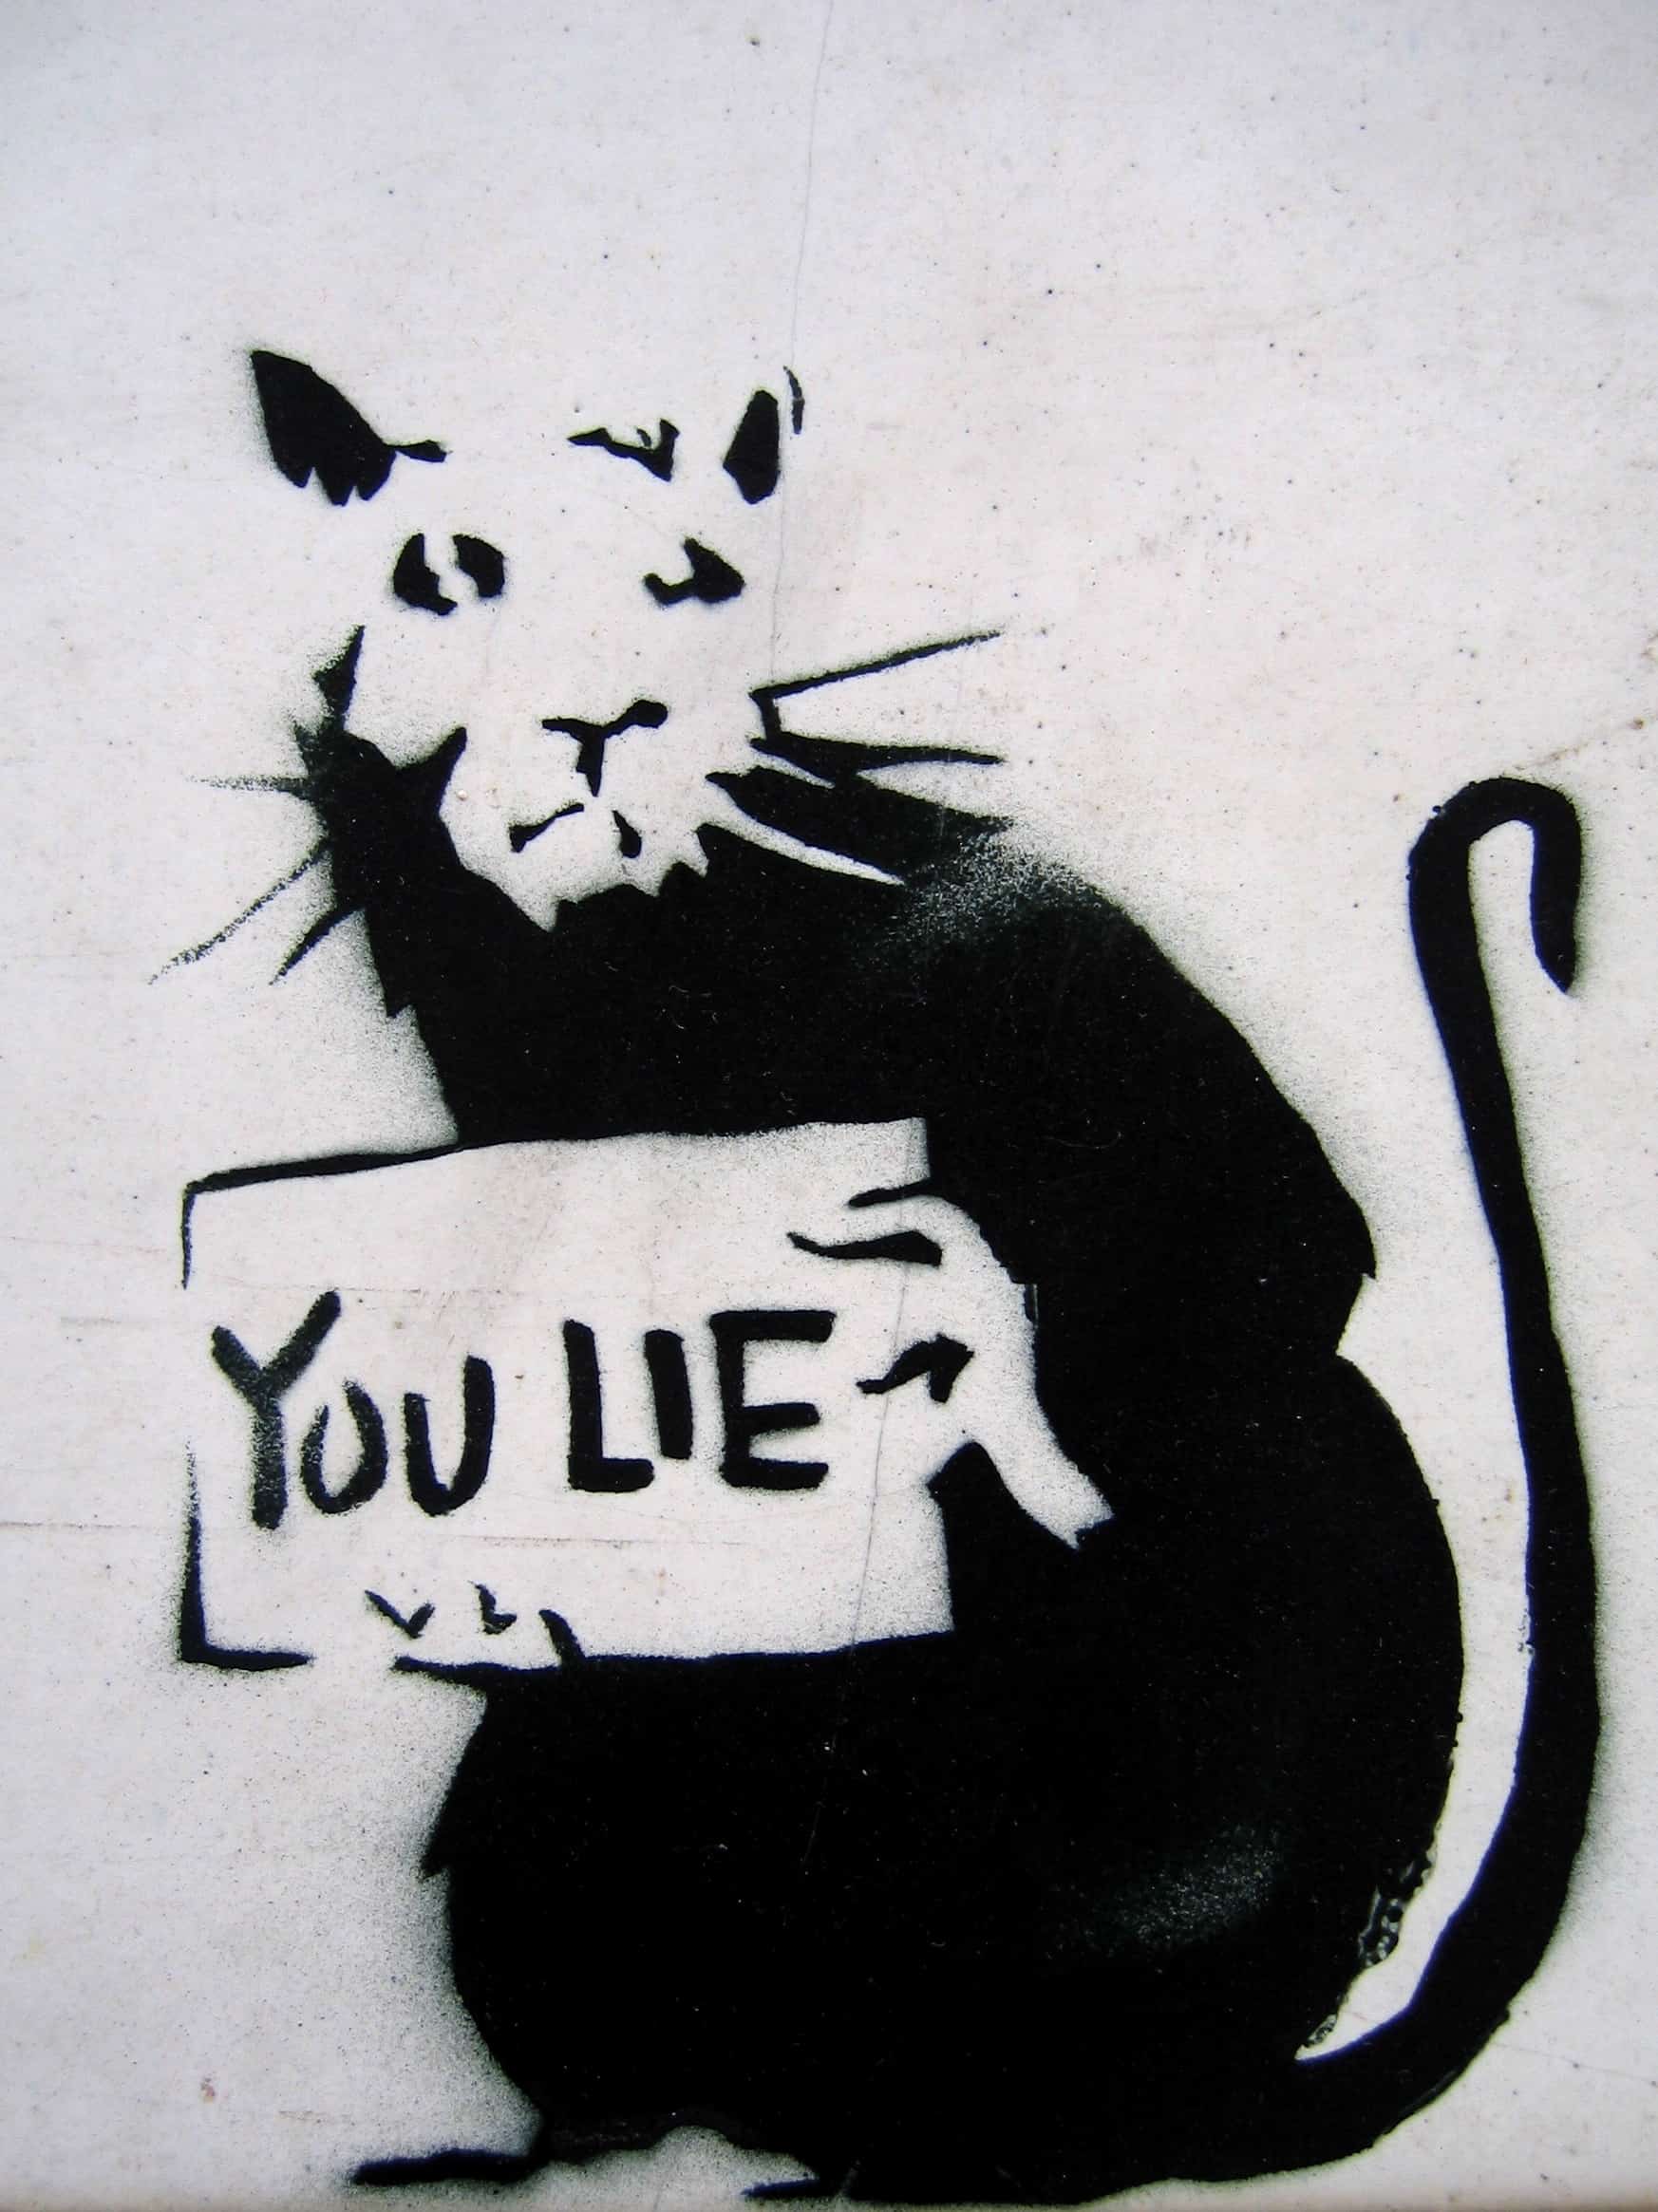 a graffiti of a rat holding a sign written you lie